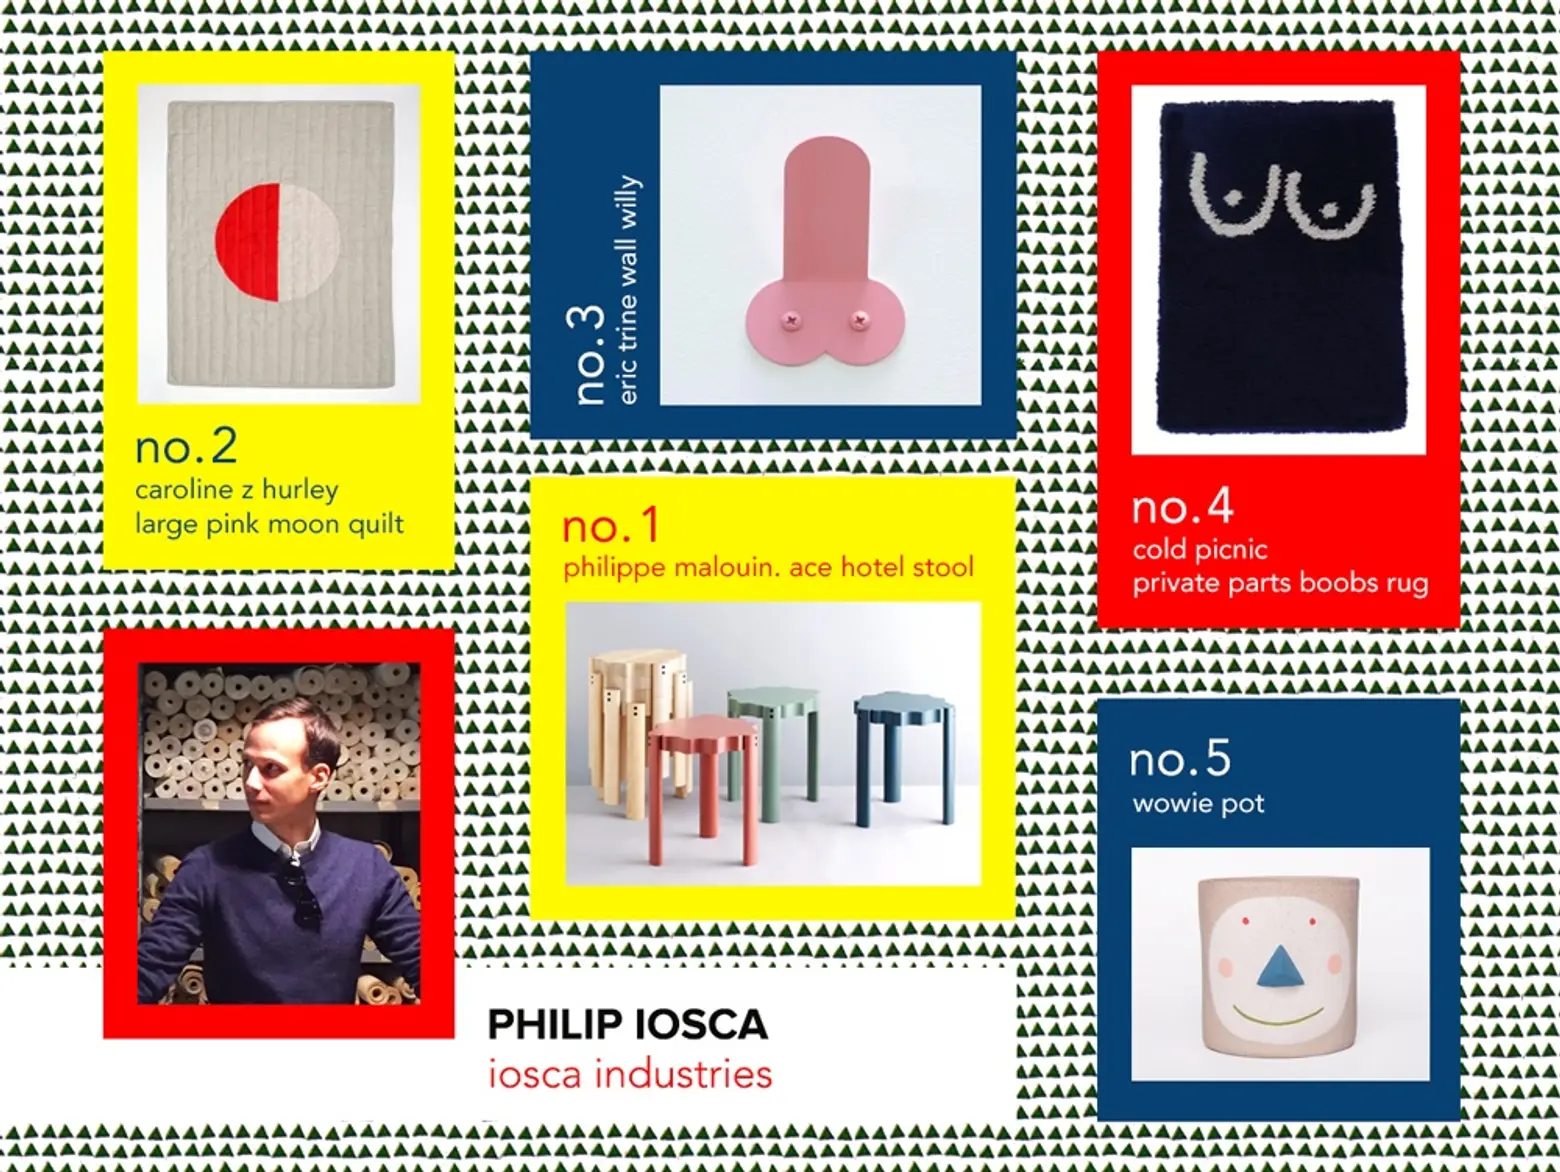 6sqft designer gift guide, Philip iosca, iosca industries